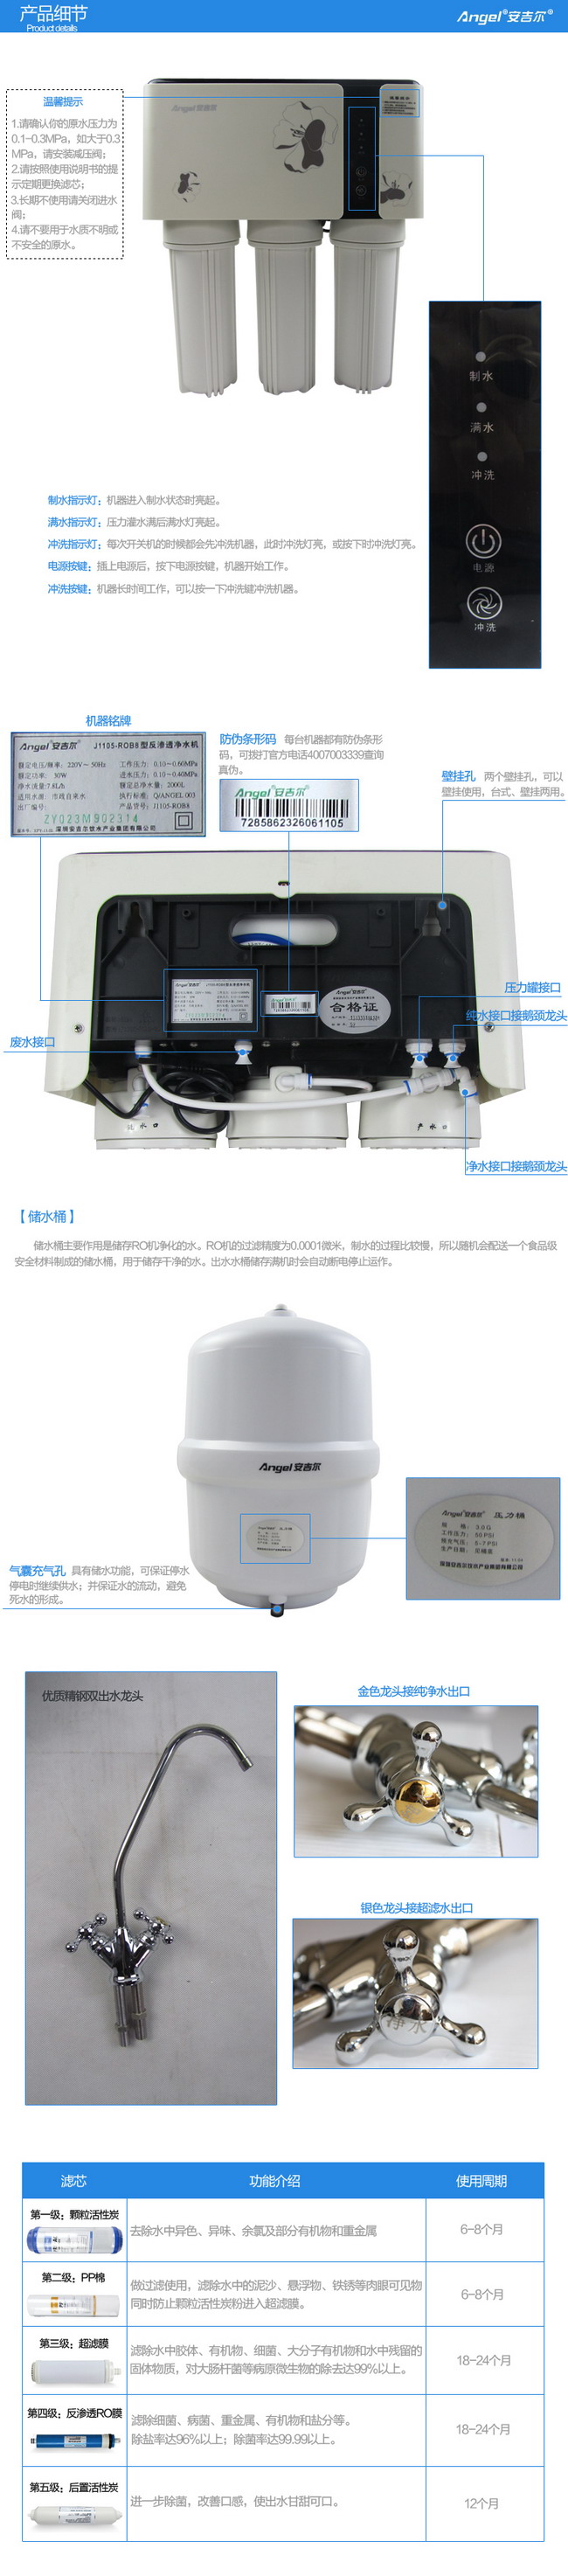 安吉尔净水器J1105-ROB8细节与滤芯功能示意图